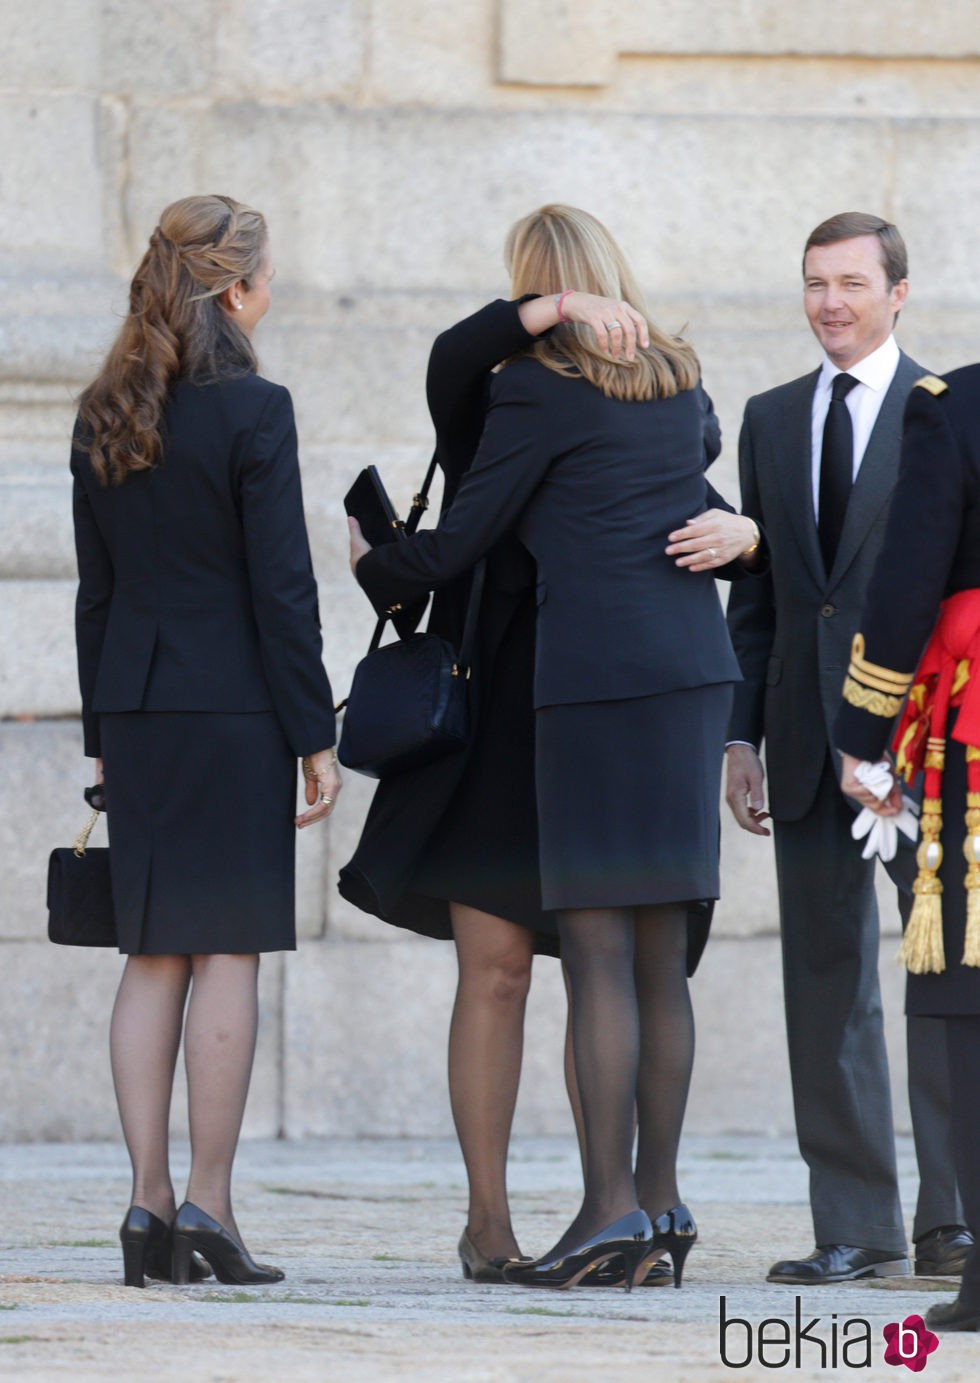 Las Infantas Elena y Cristina dan el pésame a los hijos del Duque de Calabria en su funeral